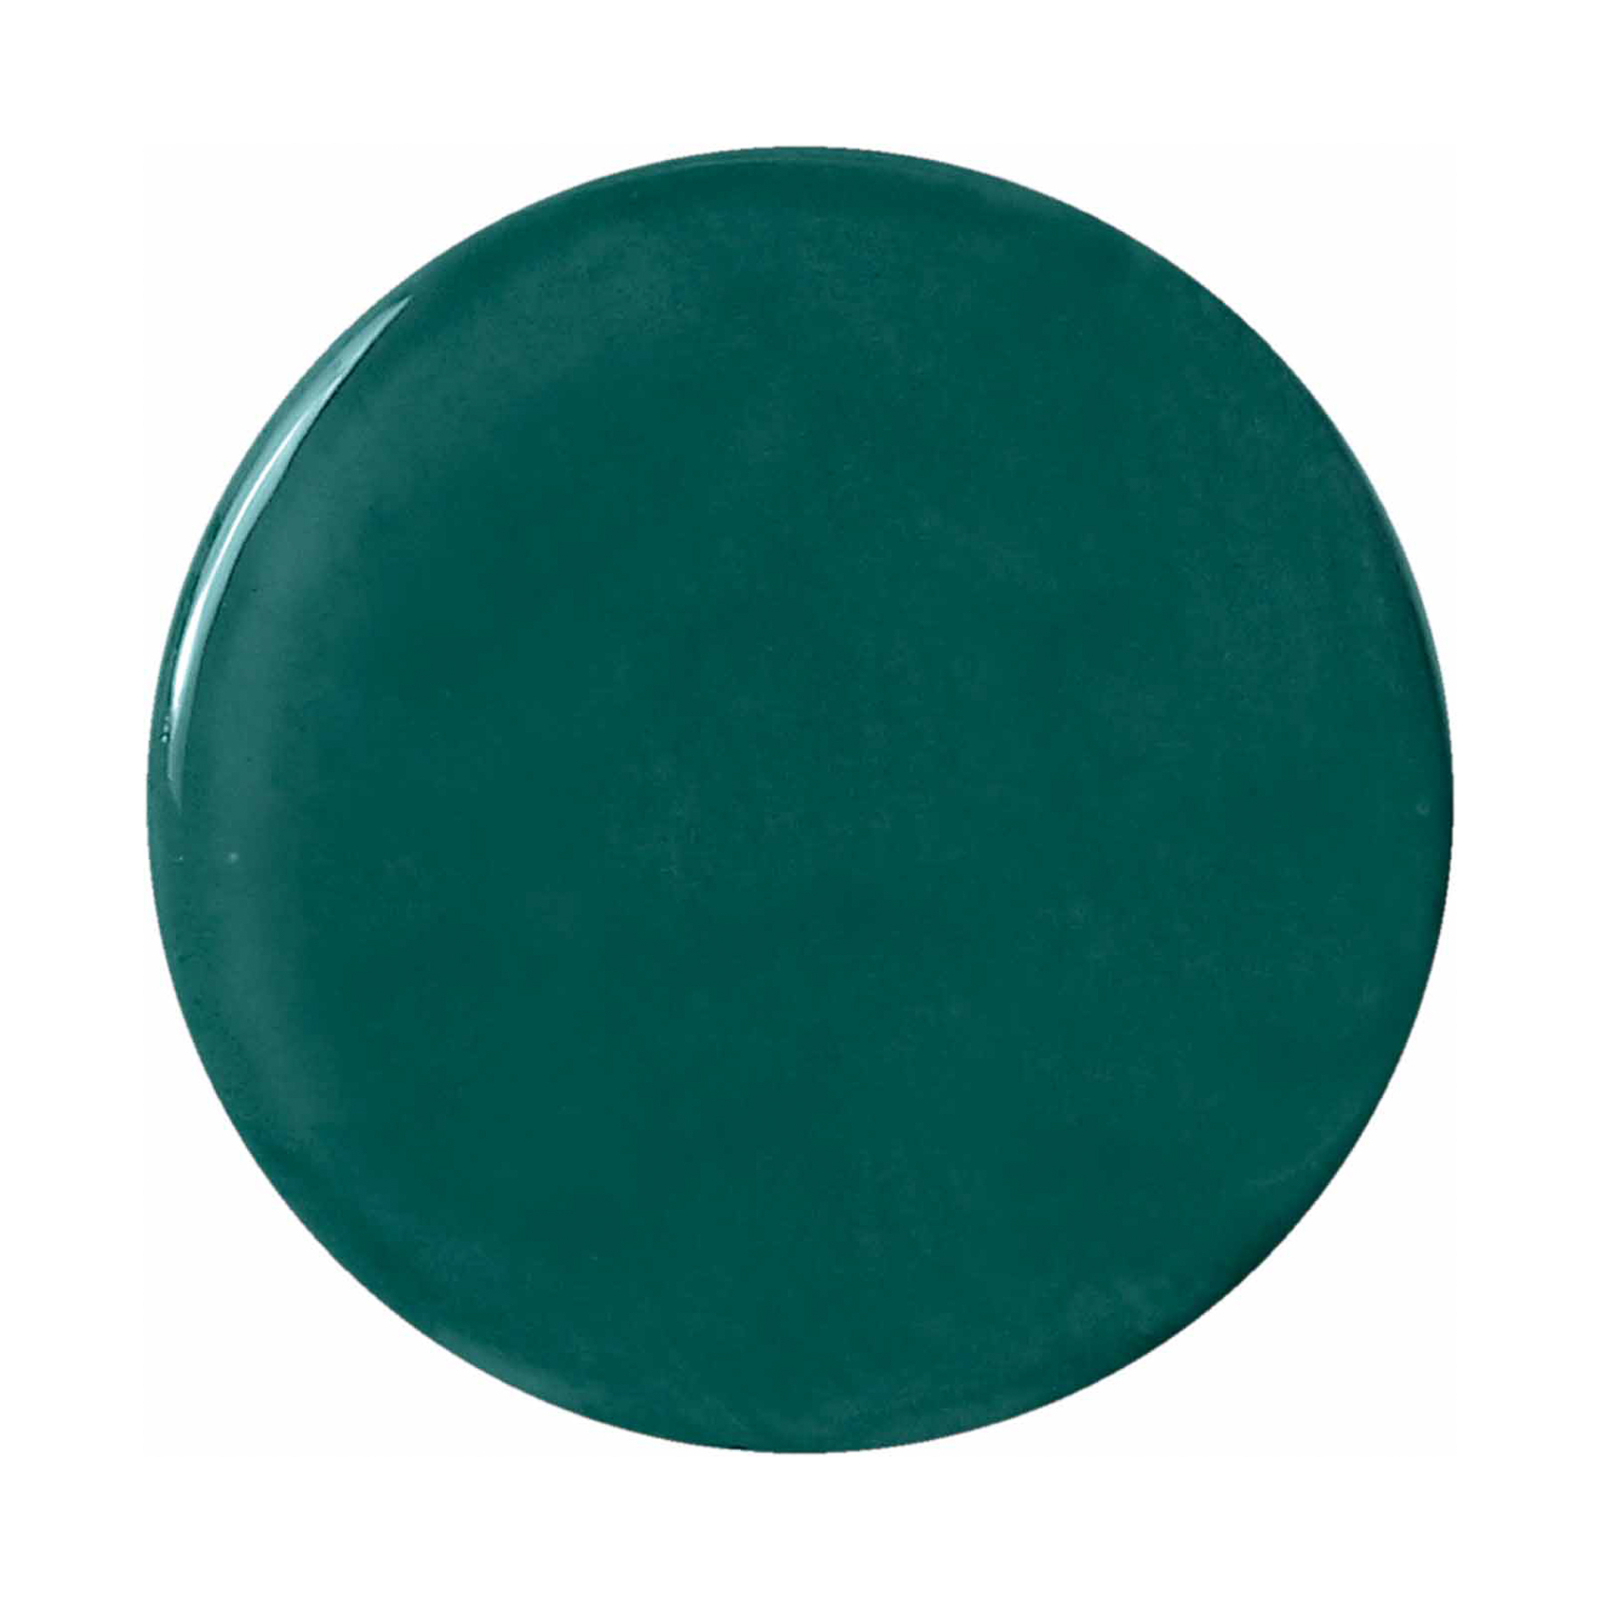 Riippuvalo Lariat keramiikkaa, K 70 cm, vihreä